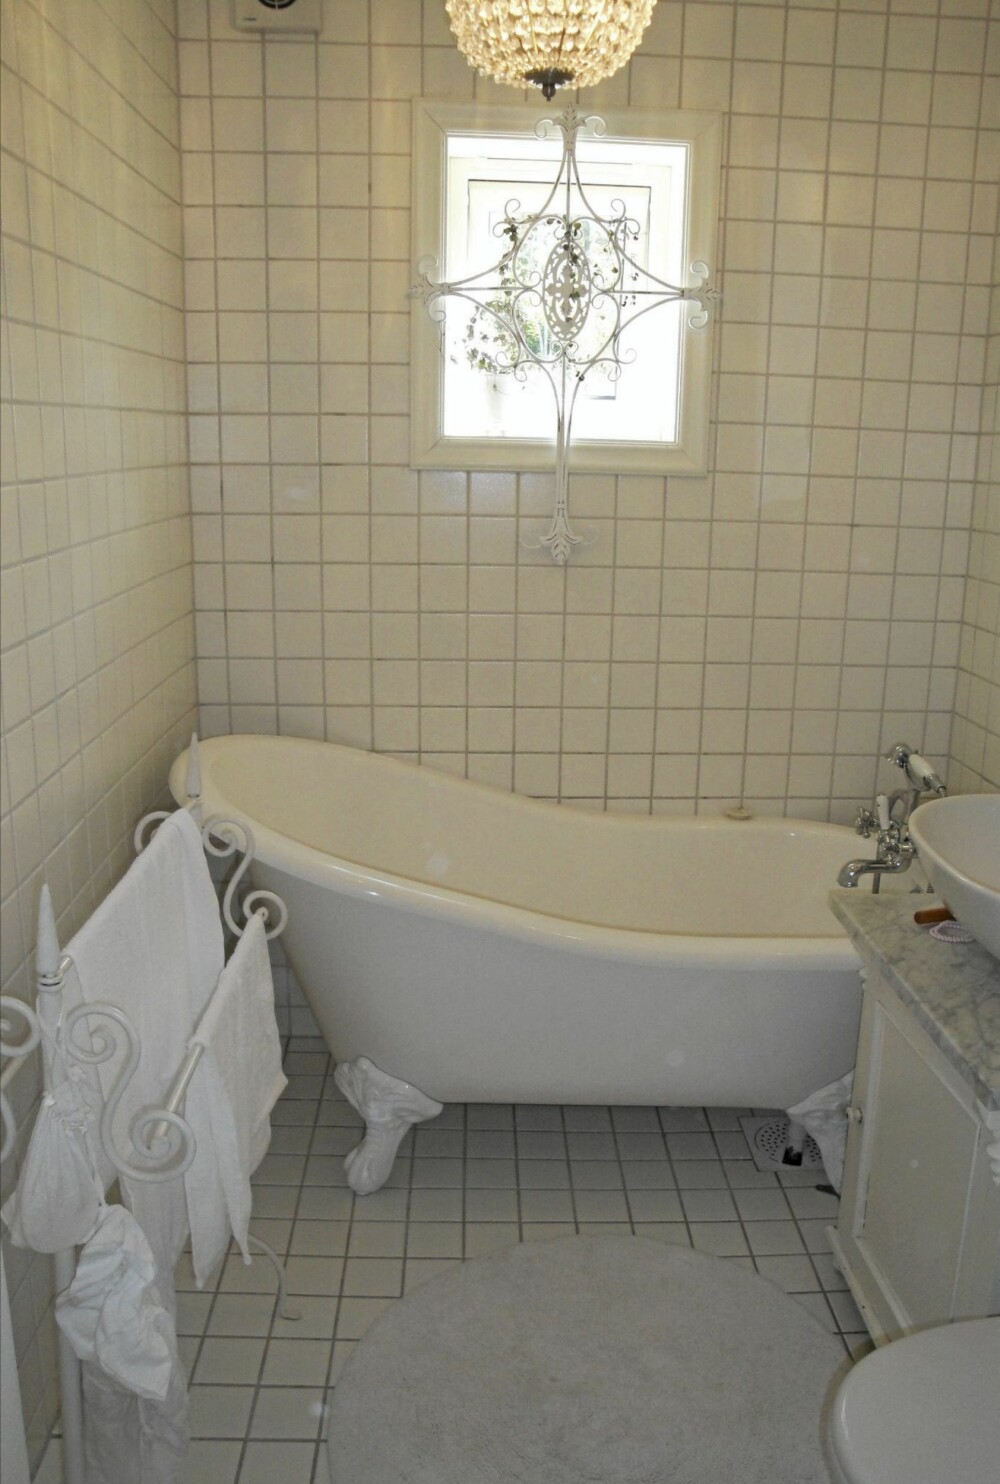 Det lille lyse badet har fått plass til et badekar med løveføtter.